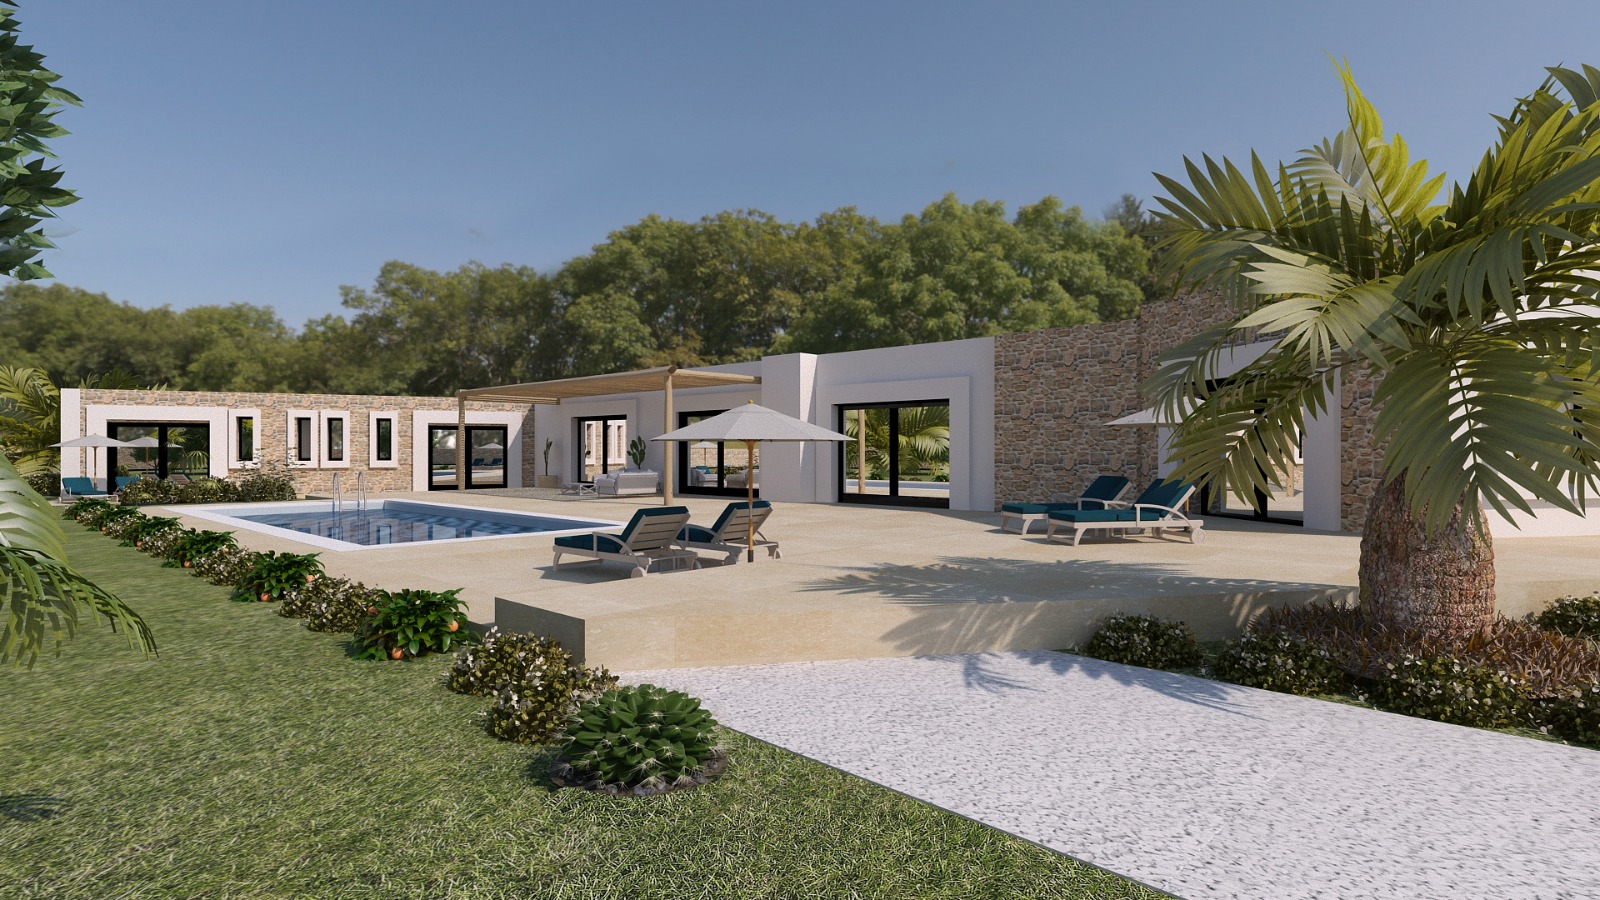 23-07-05-VV Très belle villa moderne 290 m² terrain 2385 m² contemporaine en cours de finition